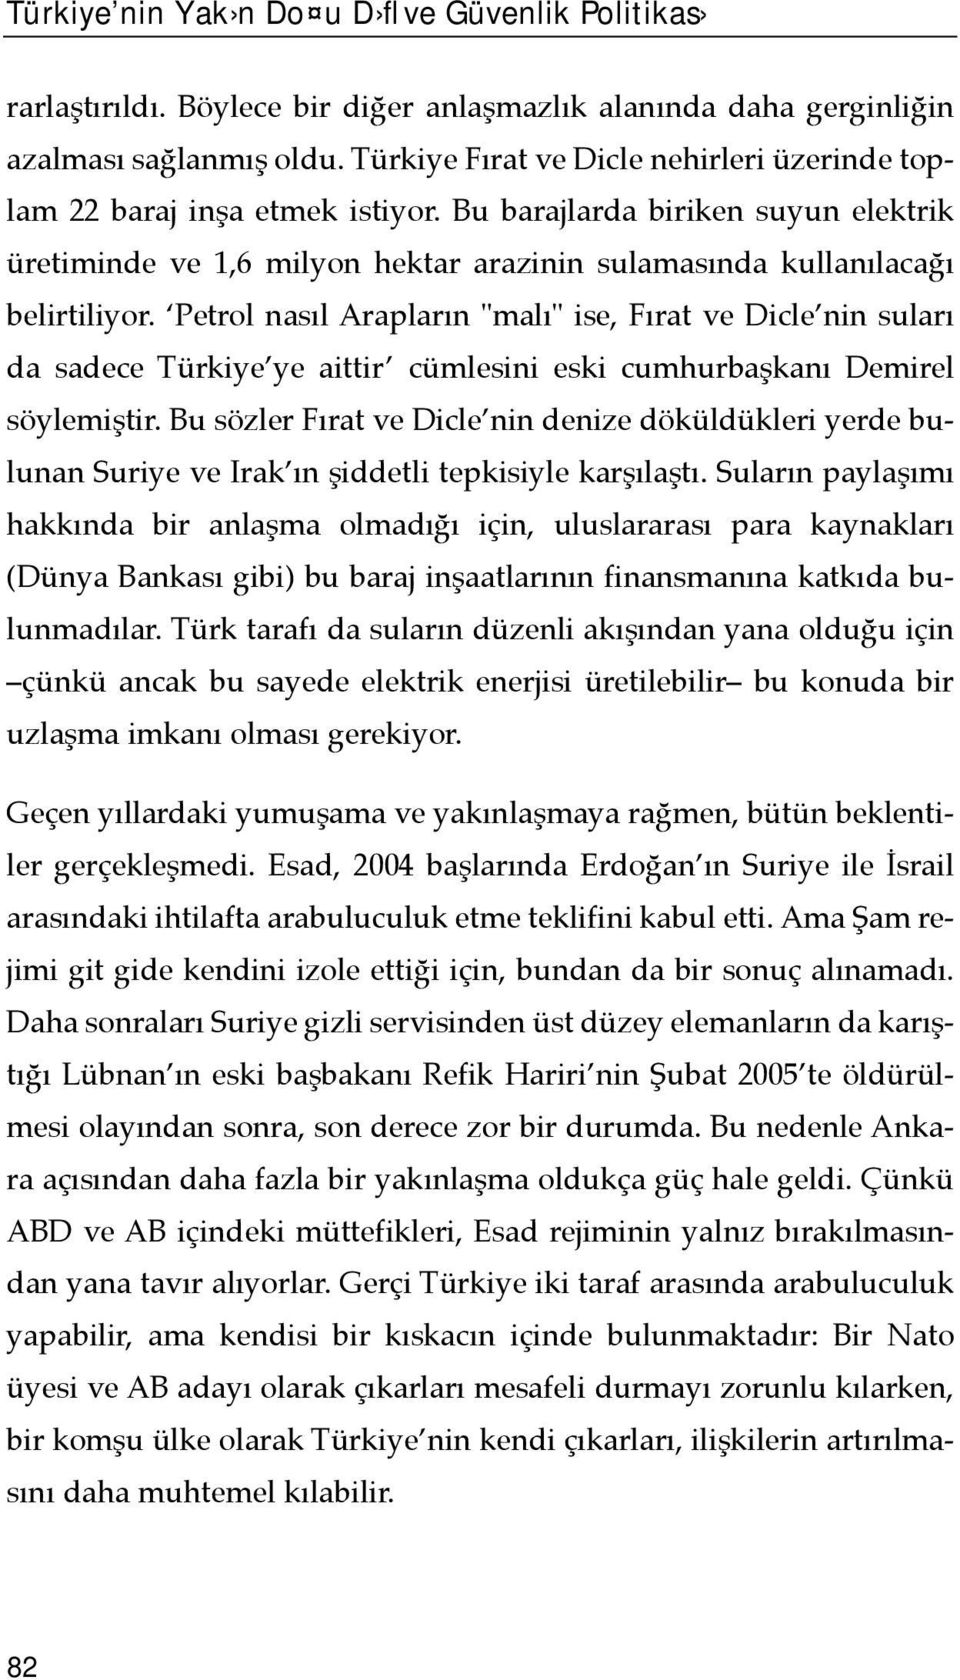 Petrol nasõl Araplarõn "malõ" ise, Fõrat ve Dicle nin sularõ da sadece Türkiye ye aittir cümlesini eski cumhurbaşkanõ Demirel söylemiştir.